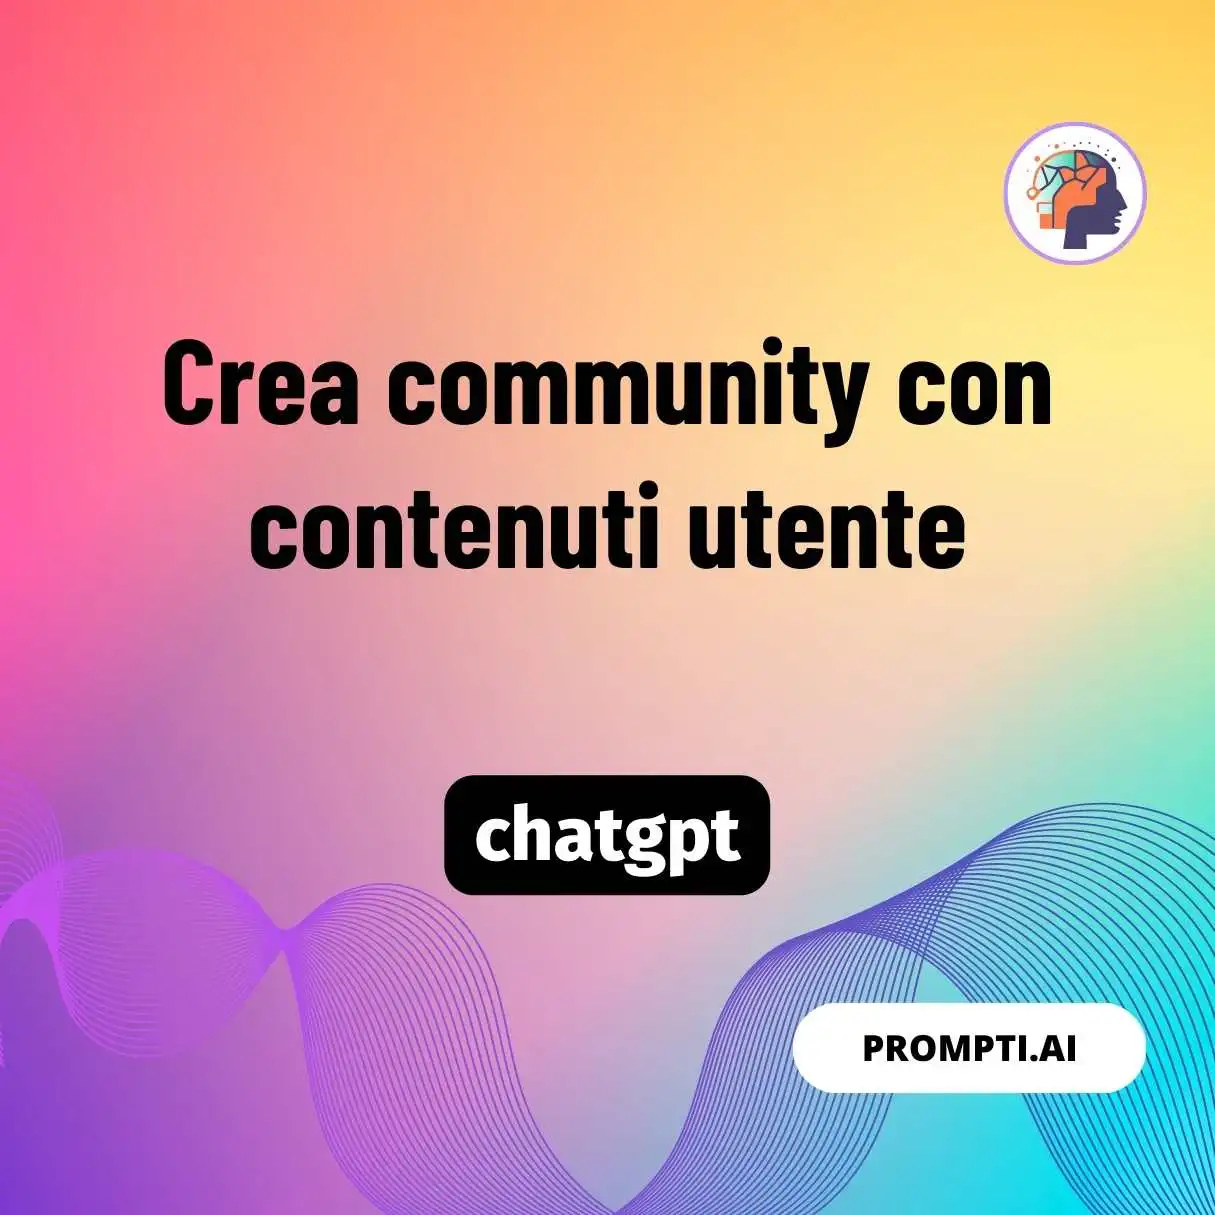 Crea community con contenuti utente